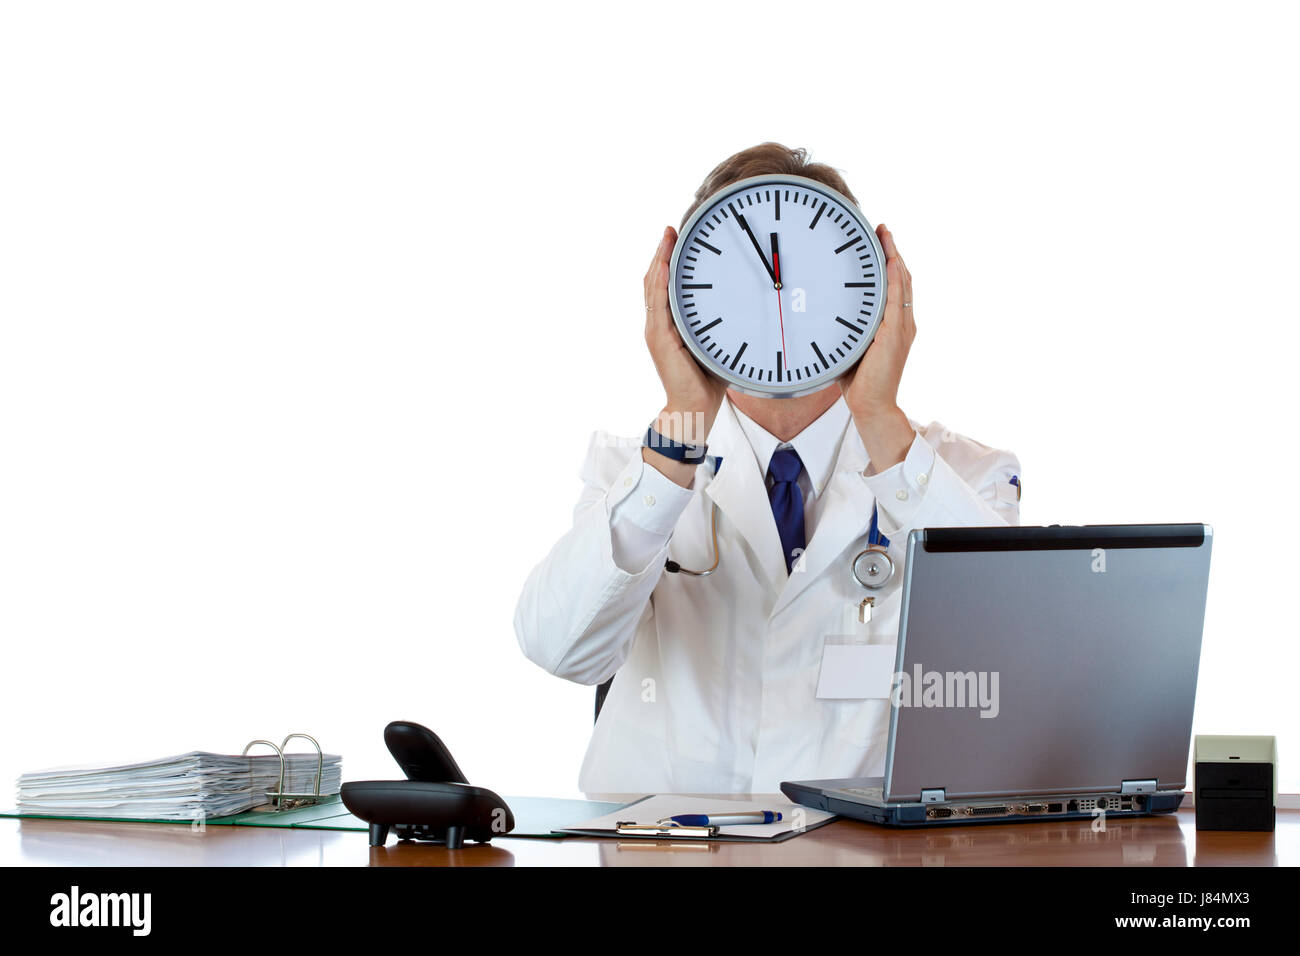 Medico orologio tiene di fronte faccia come segno di pressione in termini di tempo. Foto Stock